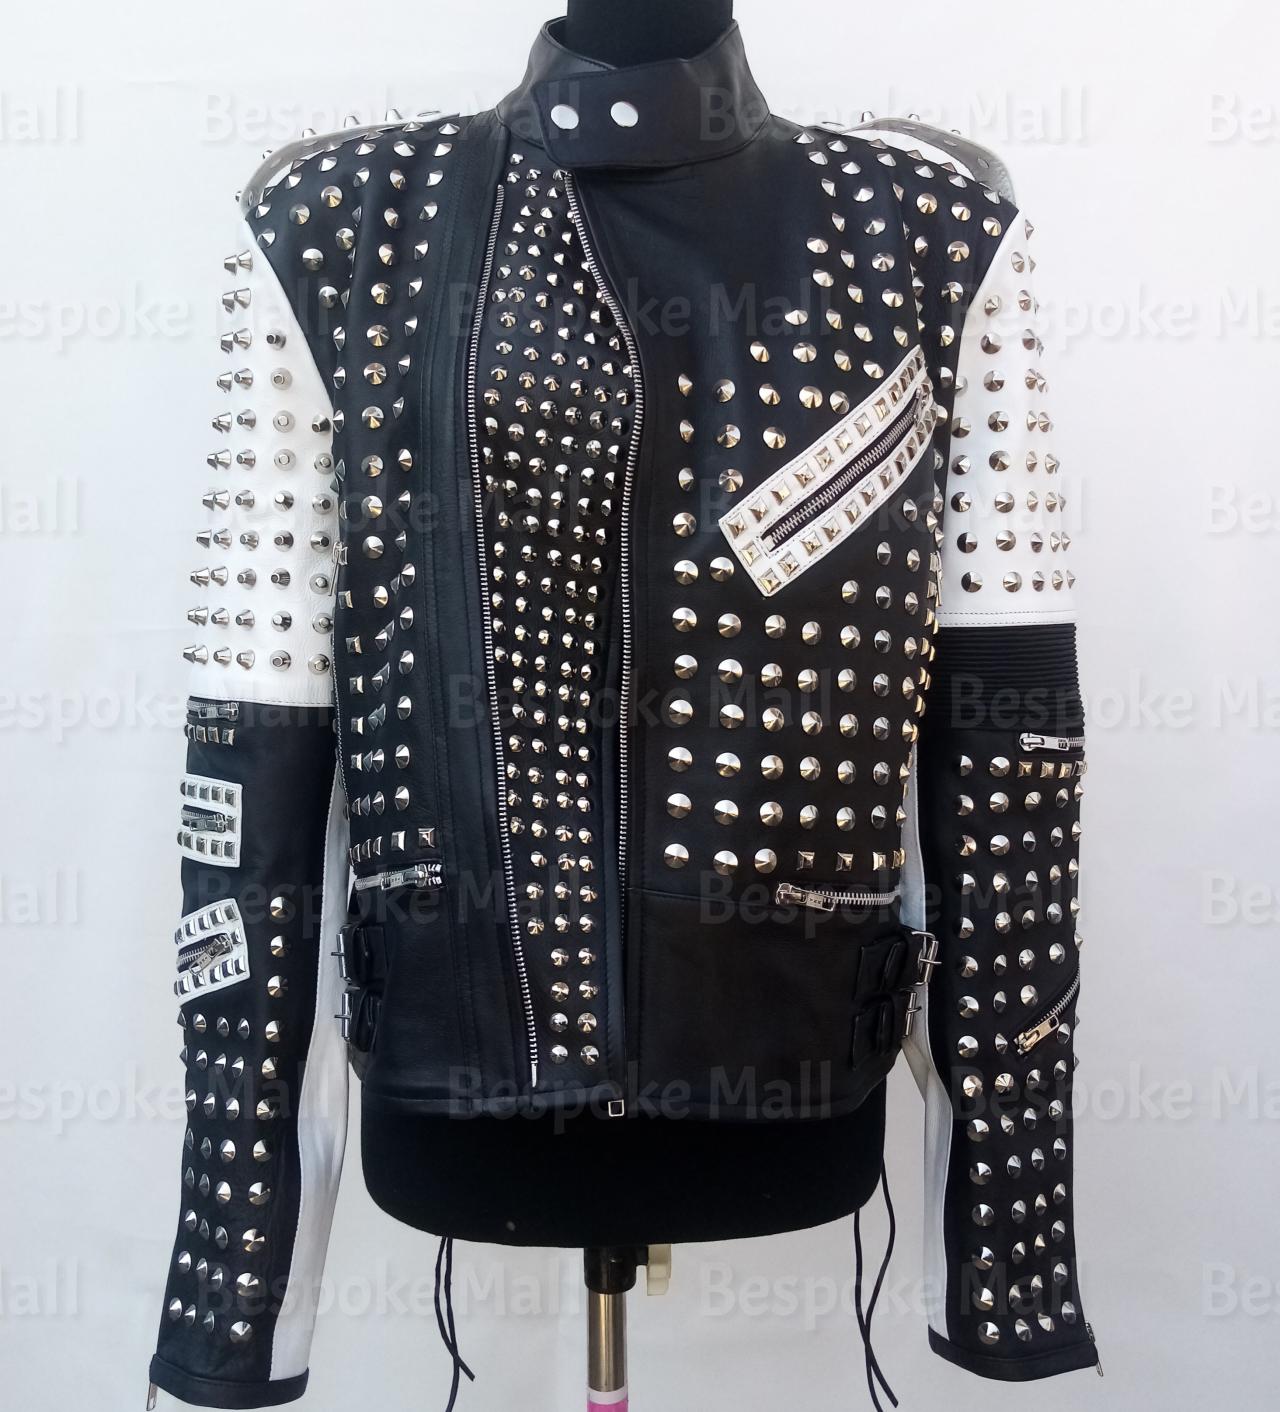 Handmade Women White Black Silver Studded Belted Stylish Leather Jacket-31